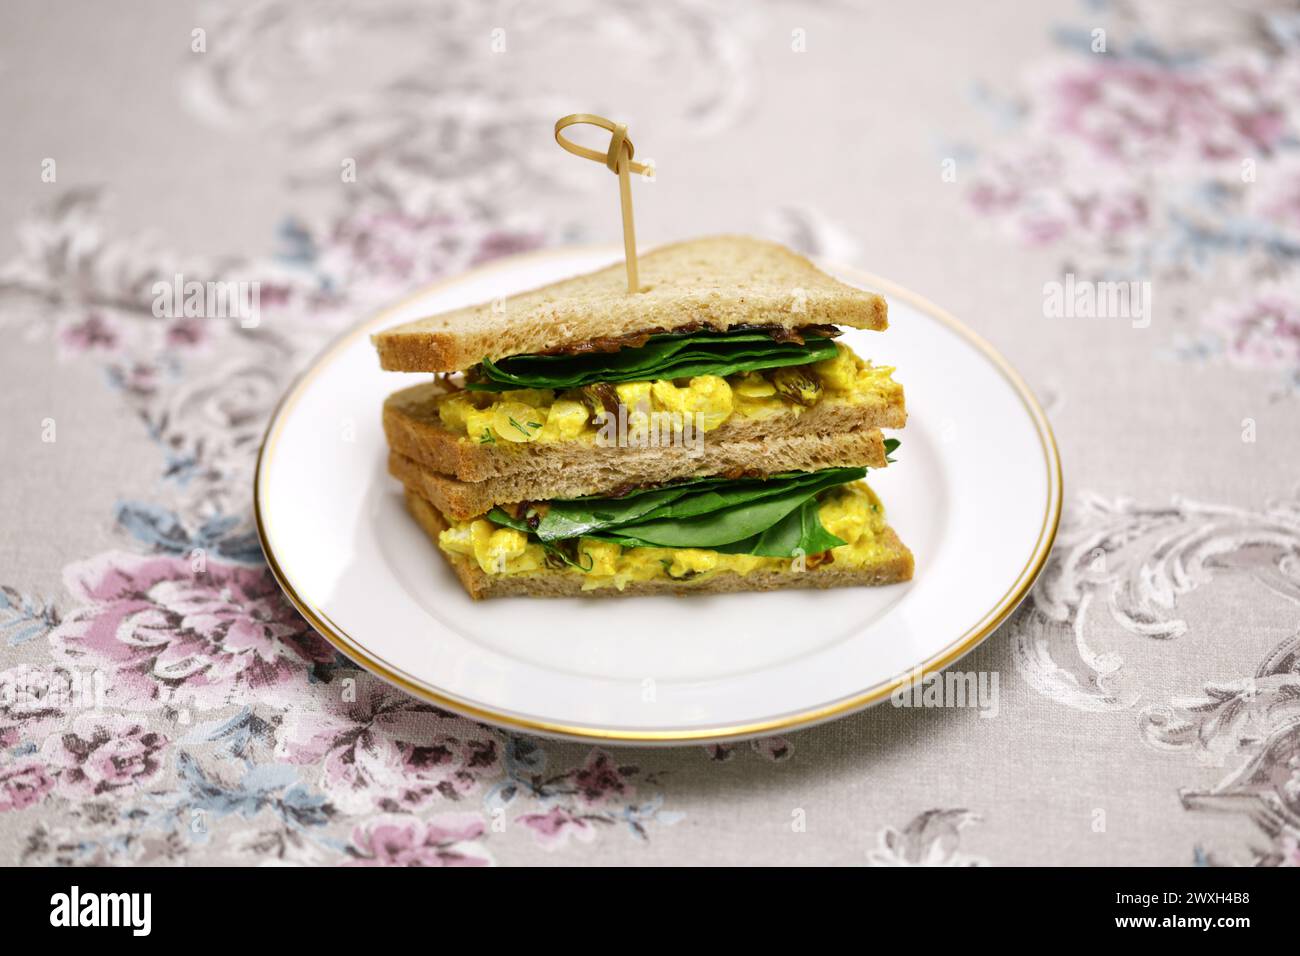 homemade coronation chicken sandwich, British cuisine Stock Photo